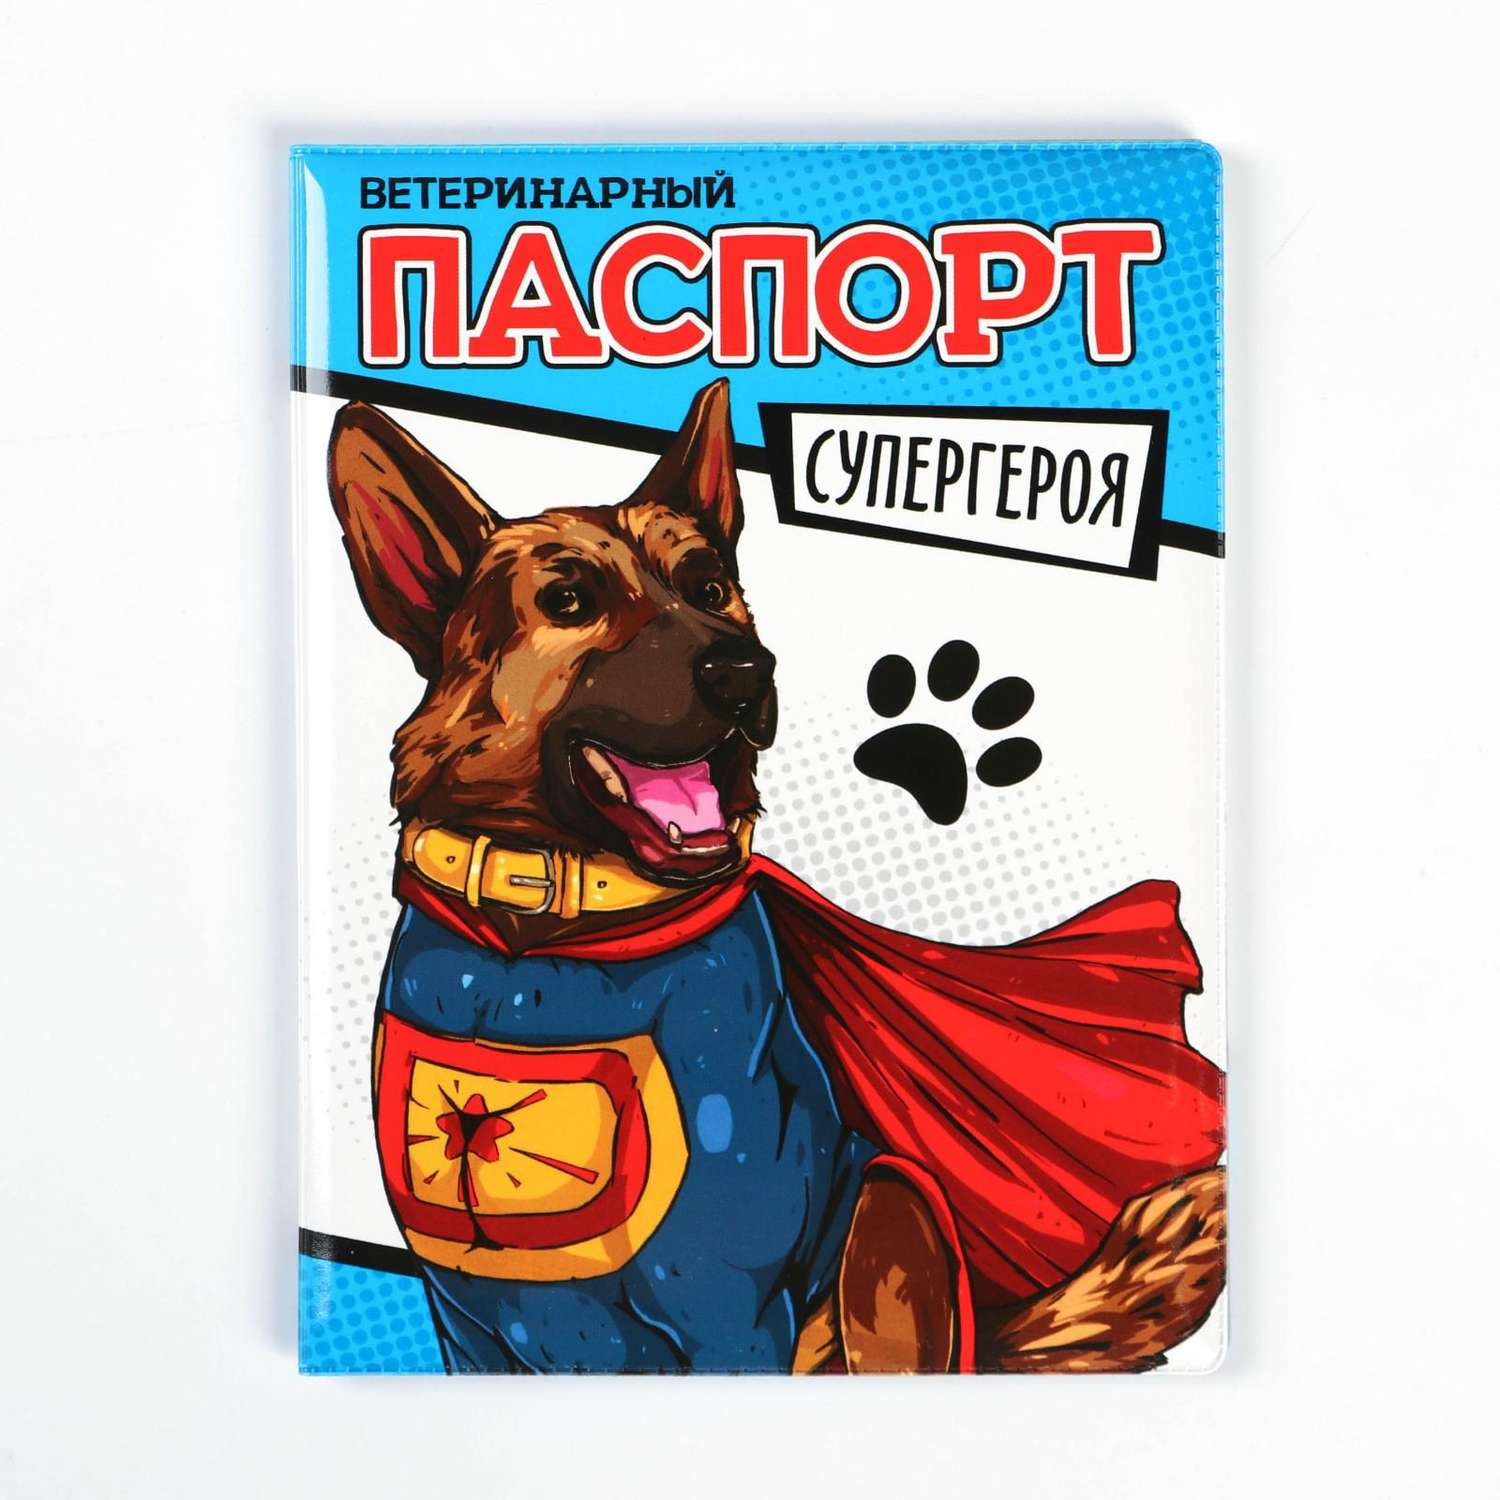 Обложка Пушистое счастье на ветеринарный паспорт супергероя - фото 1